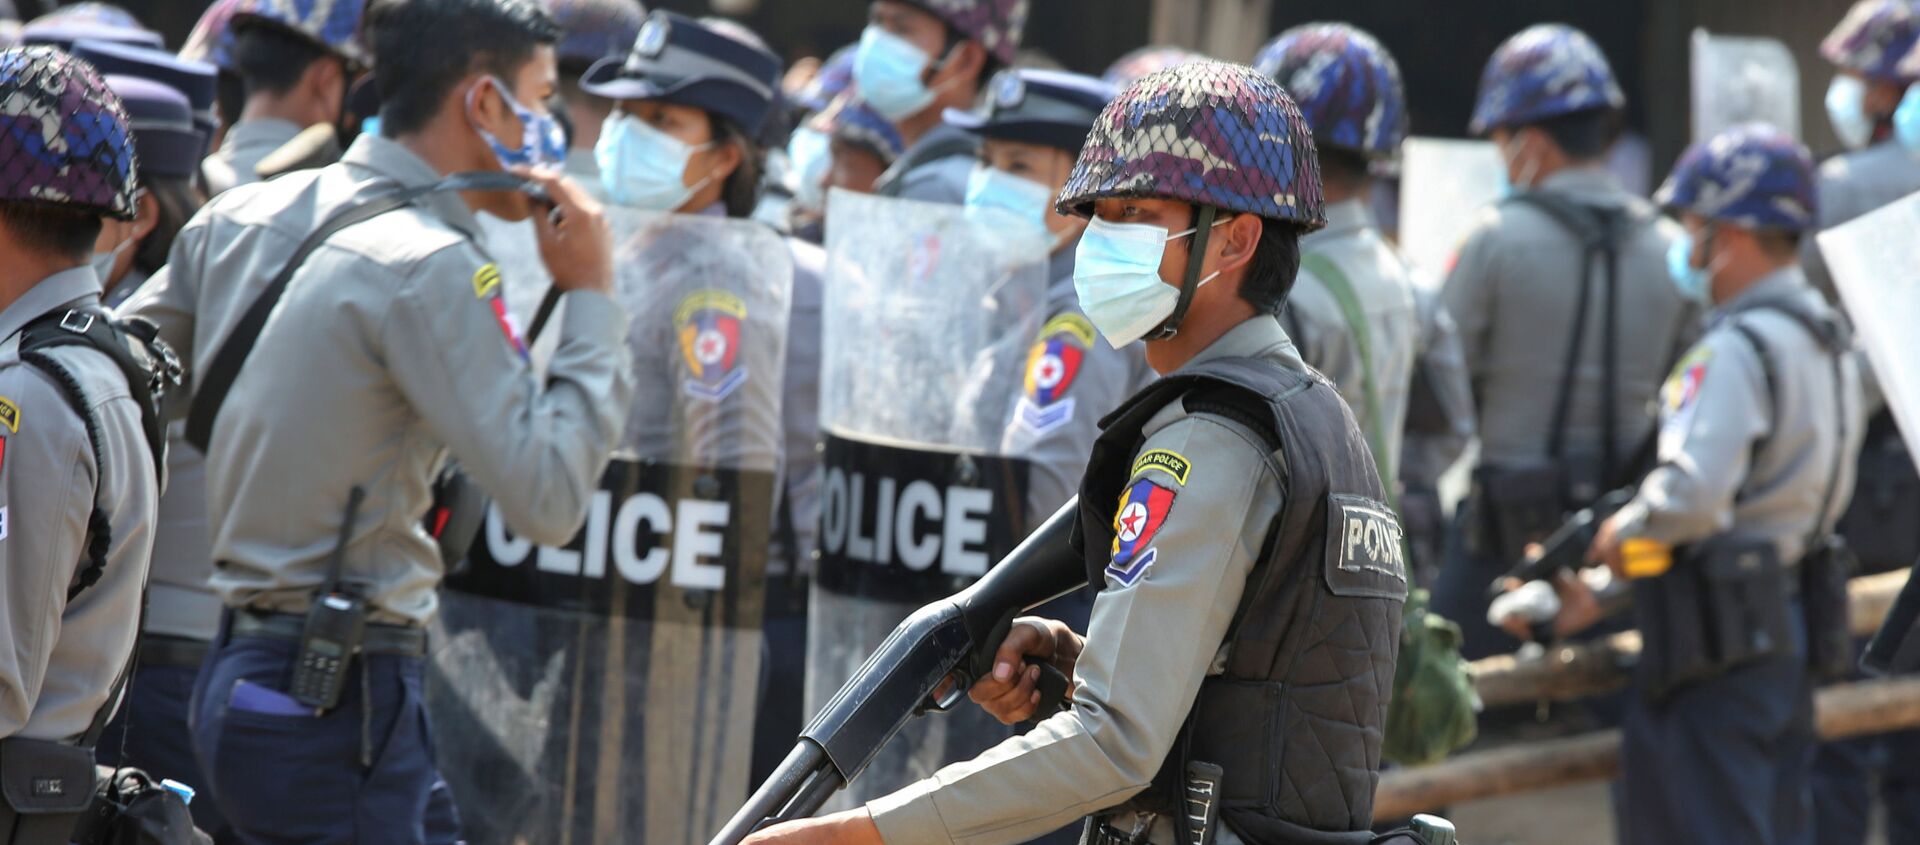 Các cảnh sát trong cuộc biểu tình phản đối đảo chính quân sự ở thủ đô Naypyidaw, Myanmar. - Sputnik Việt Nam, 1920, 26.02.2021